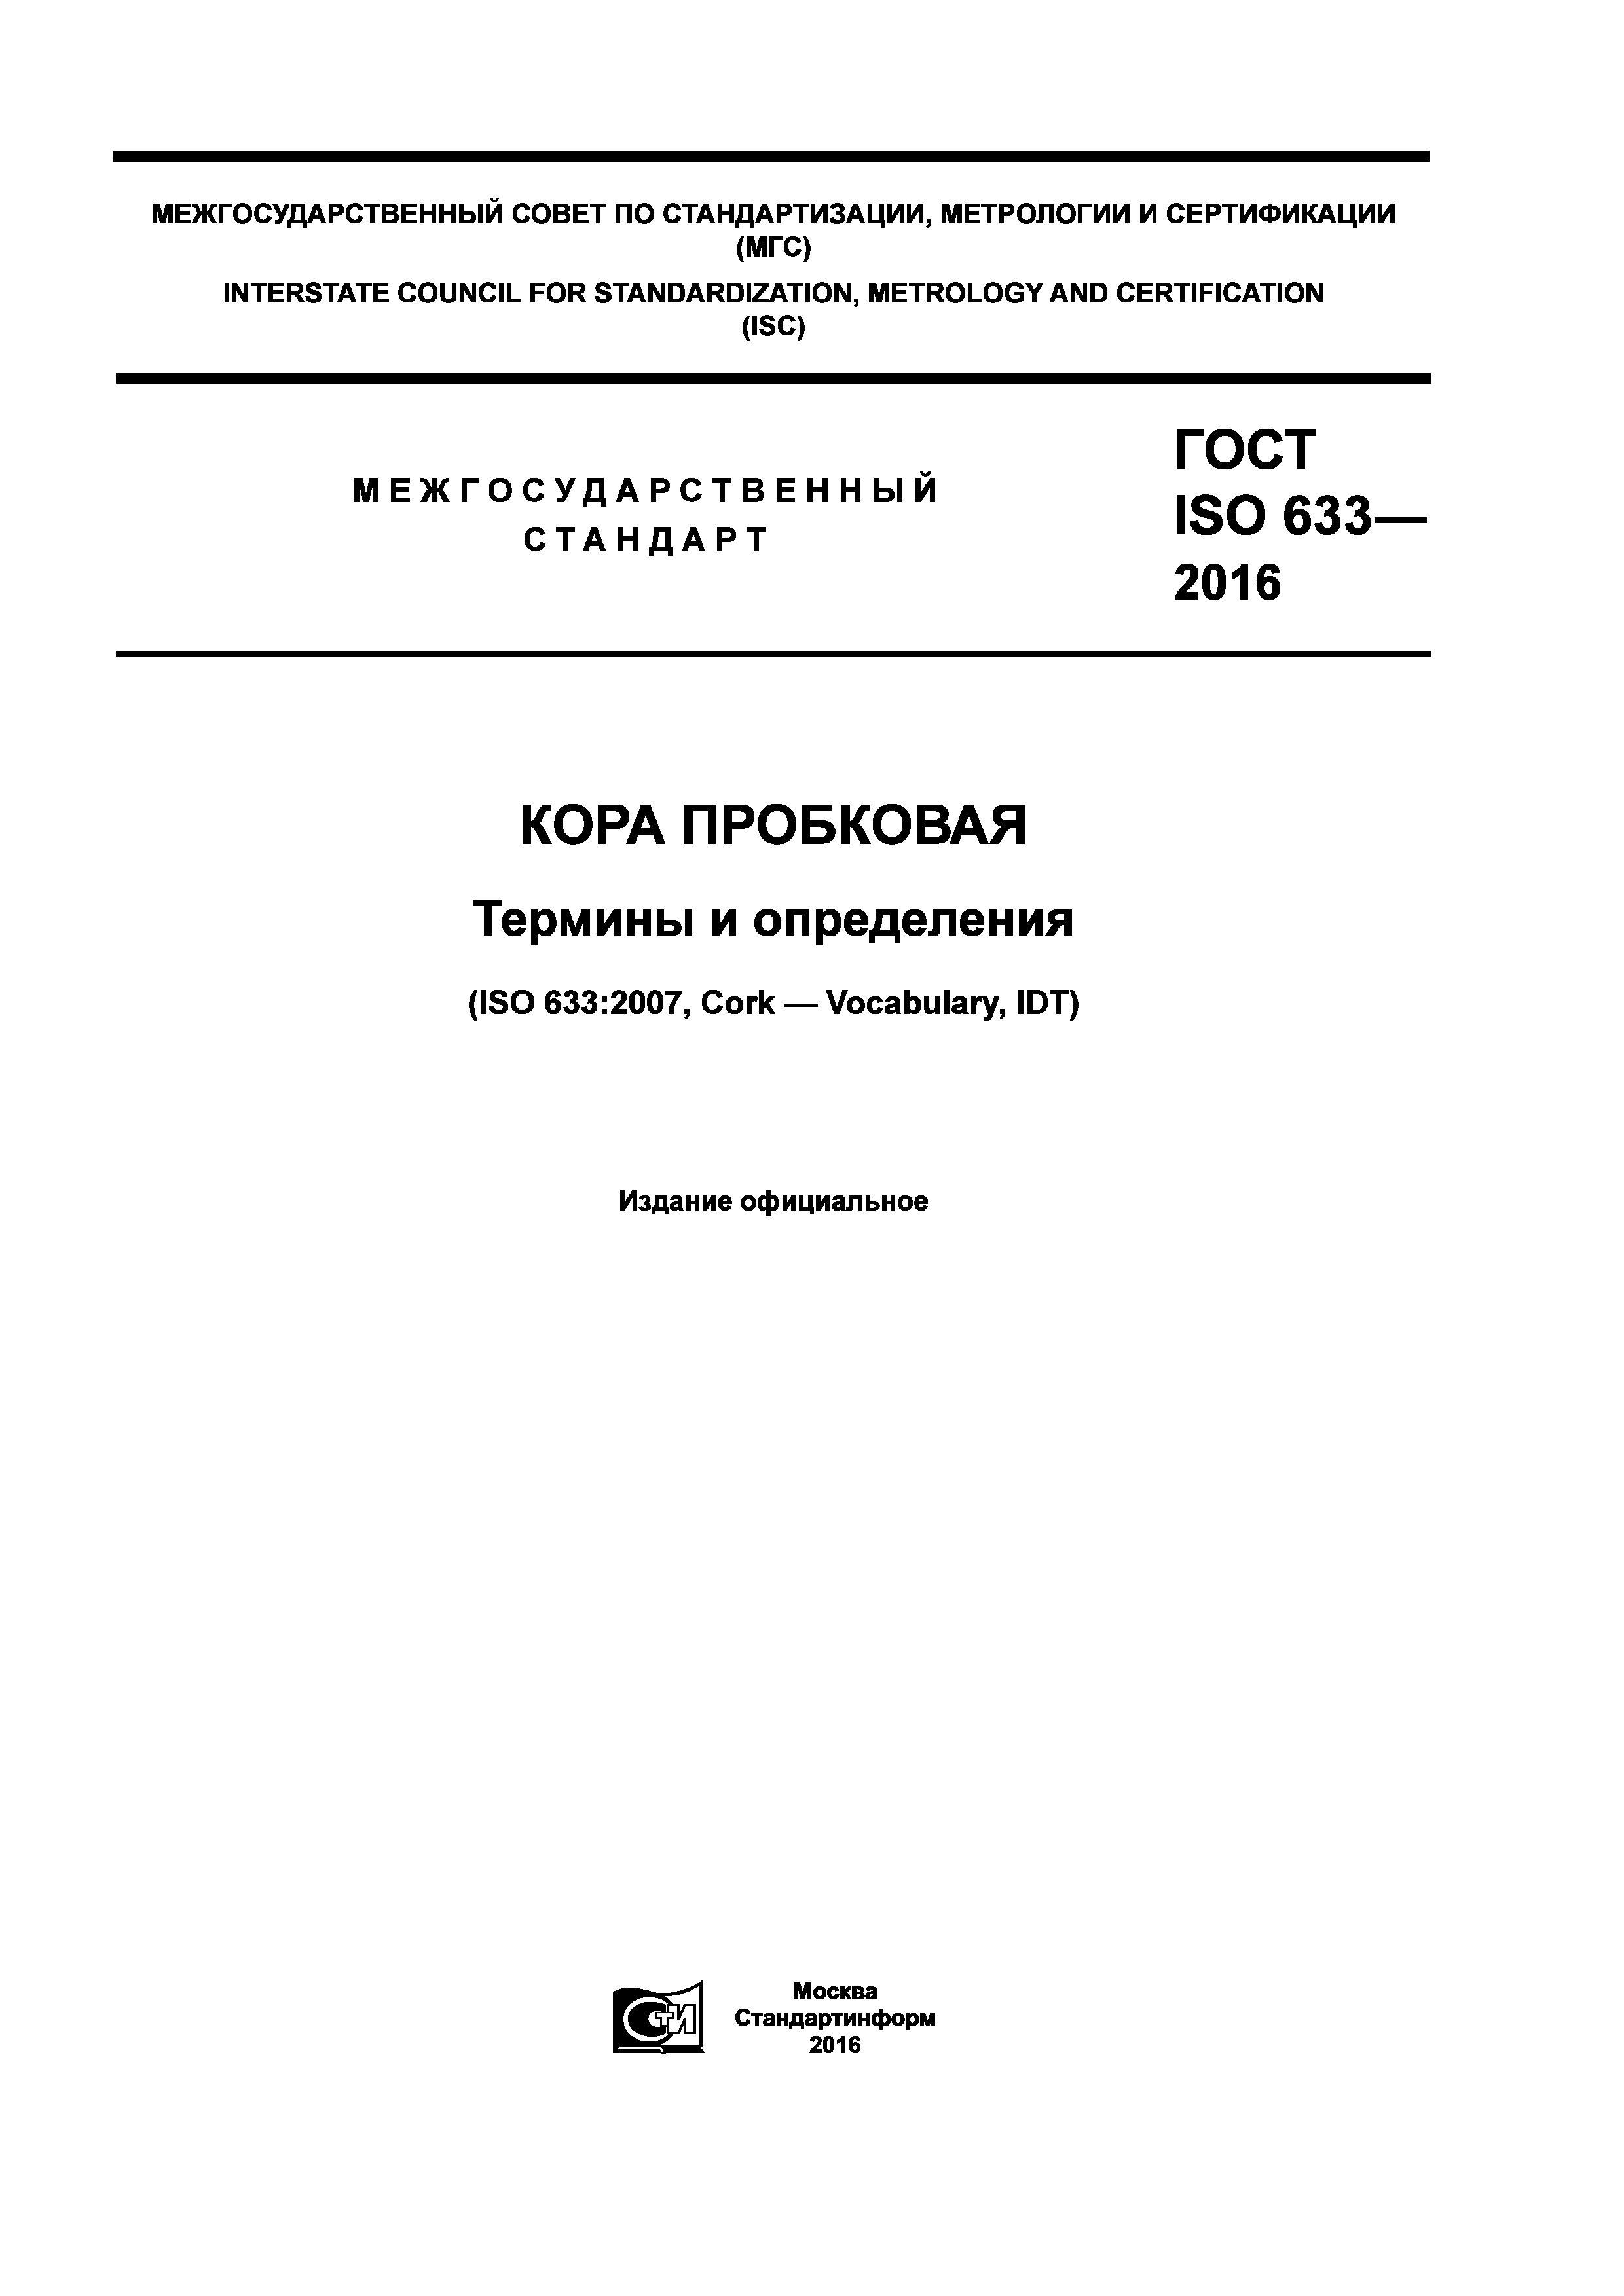 ГОСТ ISO 633-2016